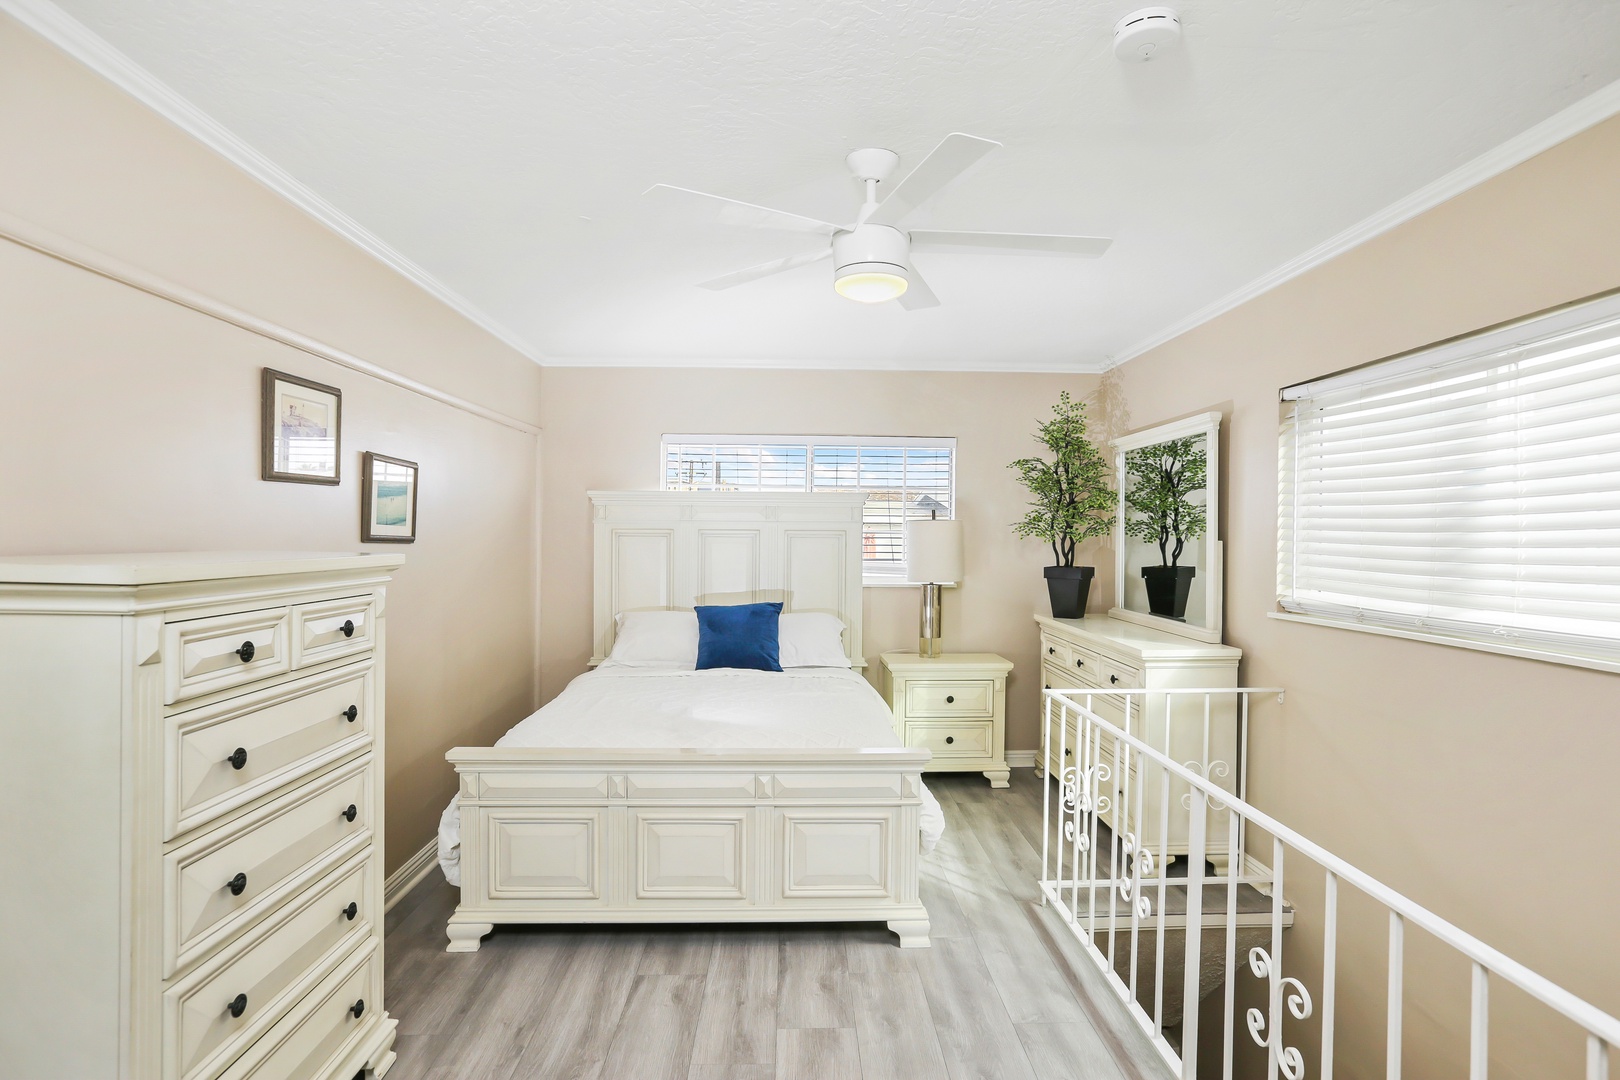 2nd bedroom: Queen bed